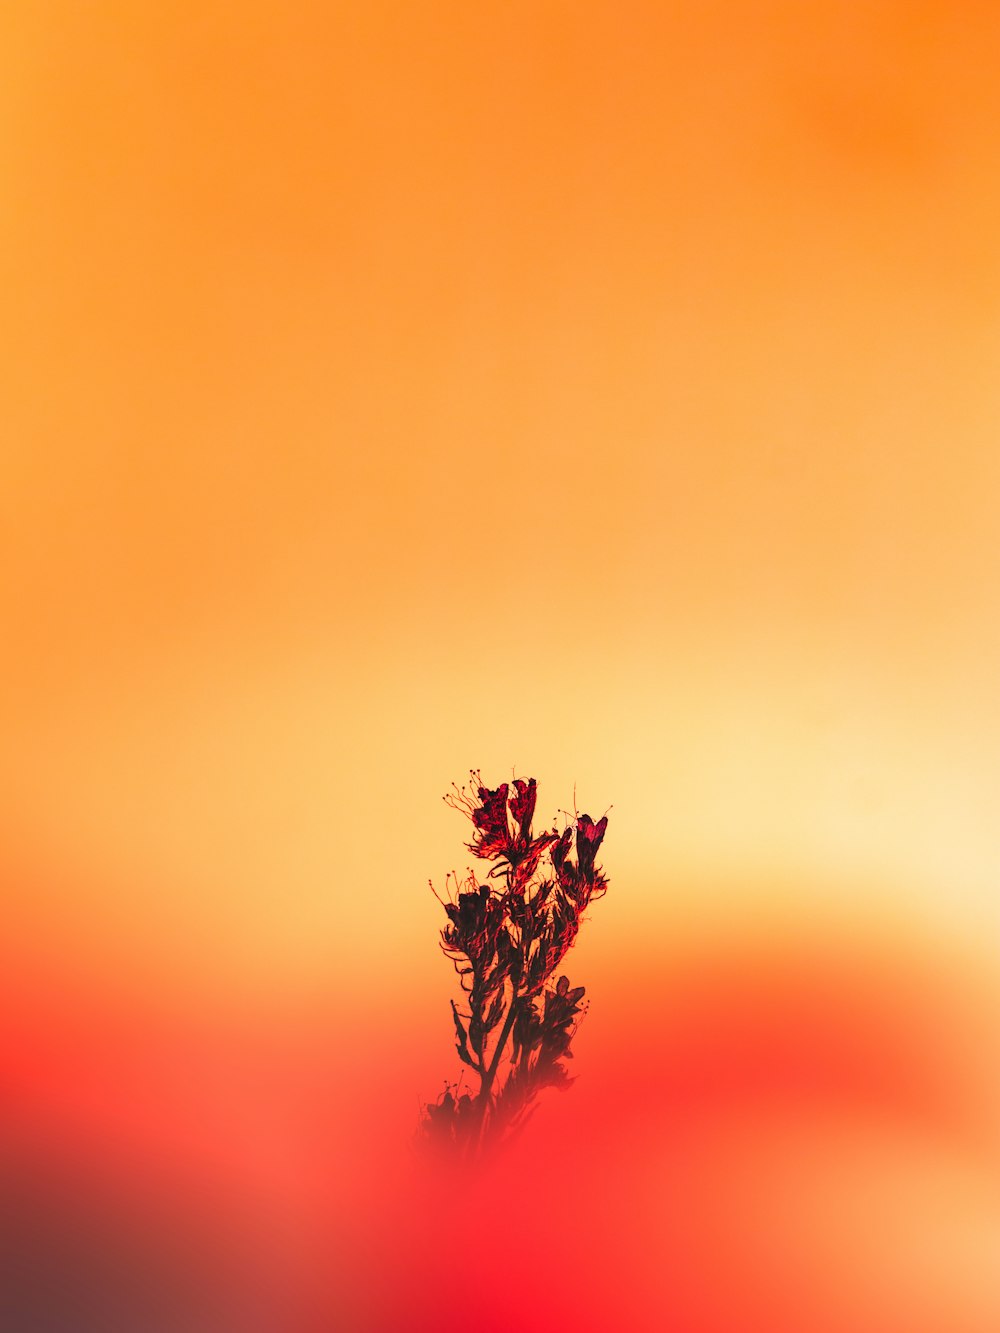 flor vermelha no fundo alaranjado